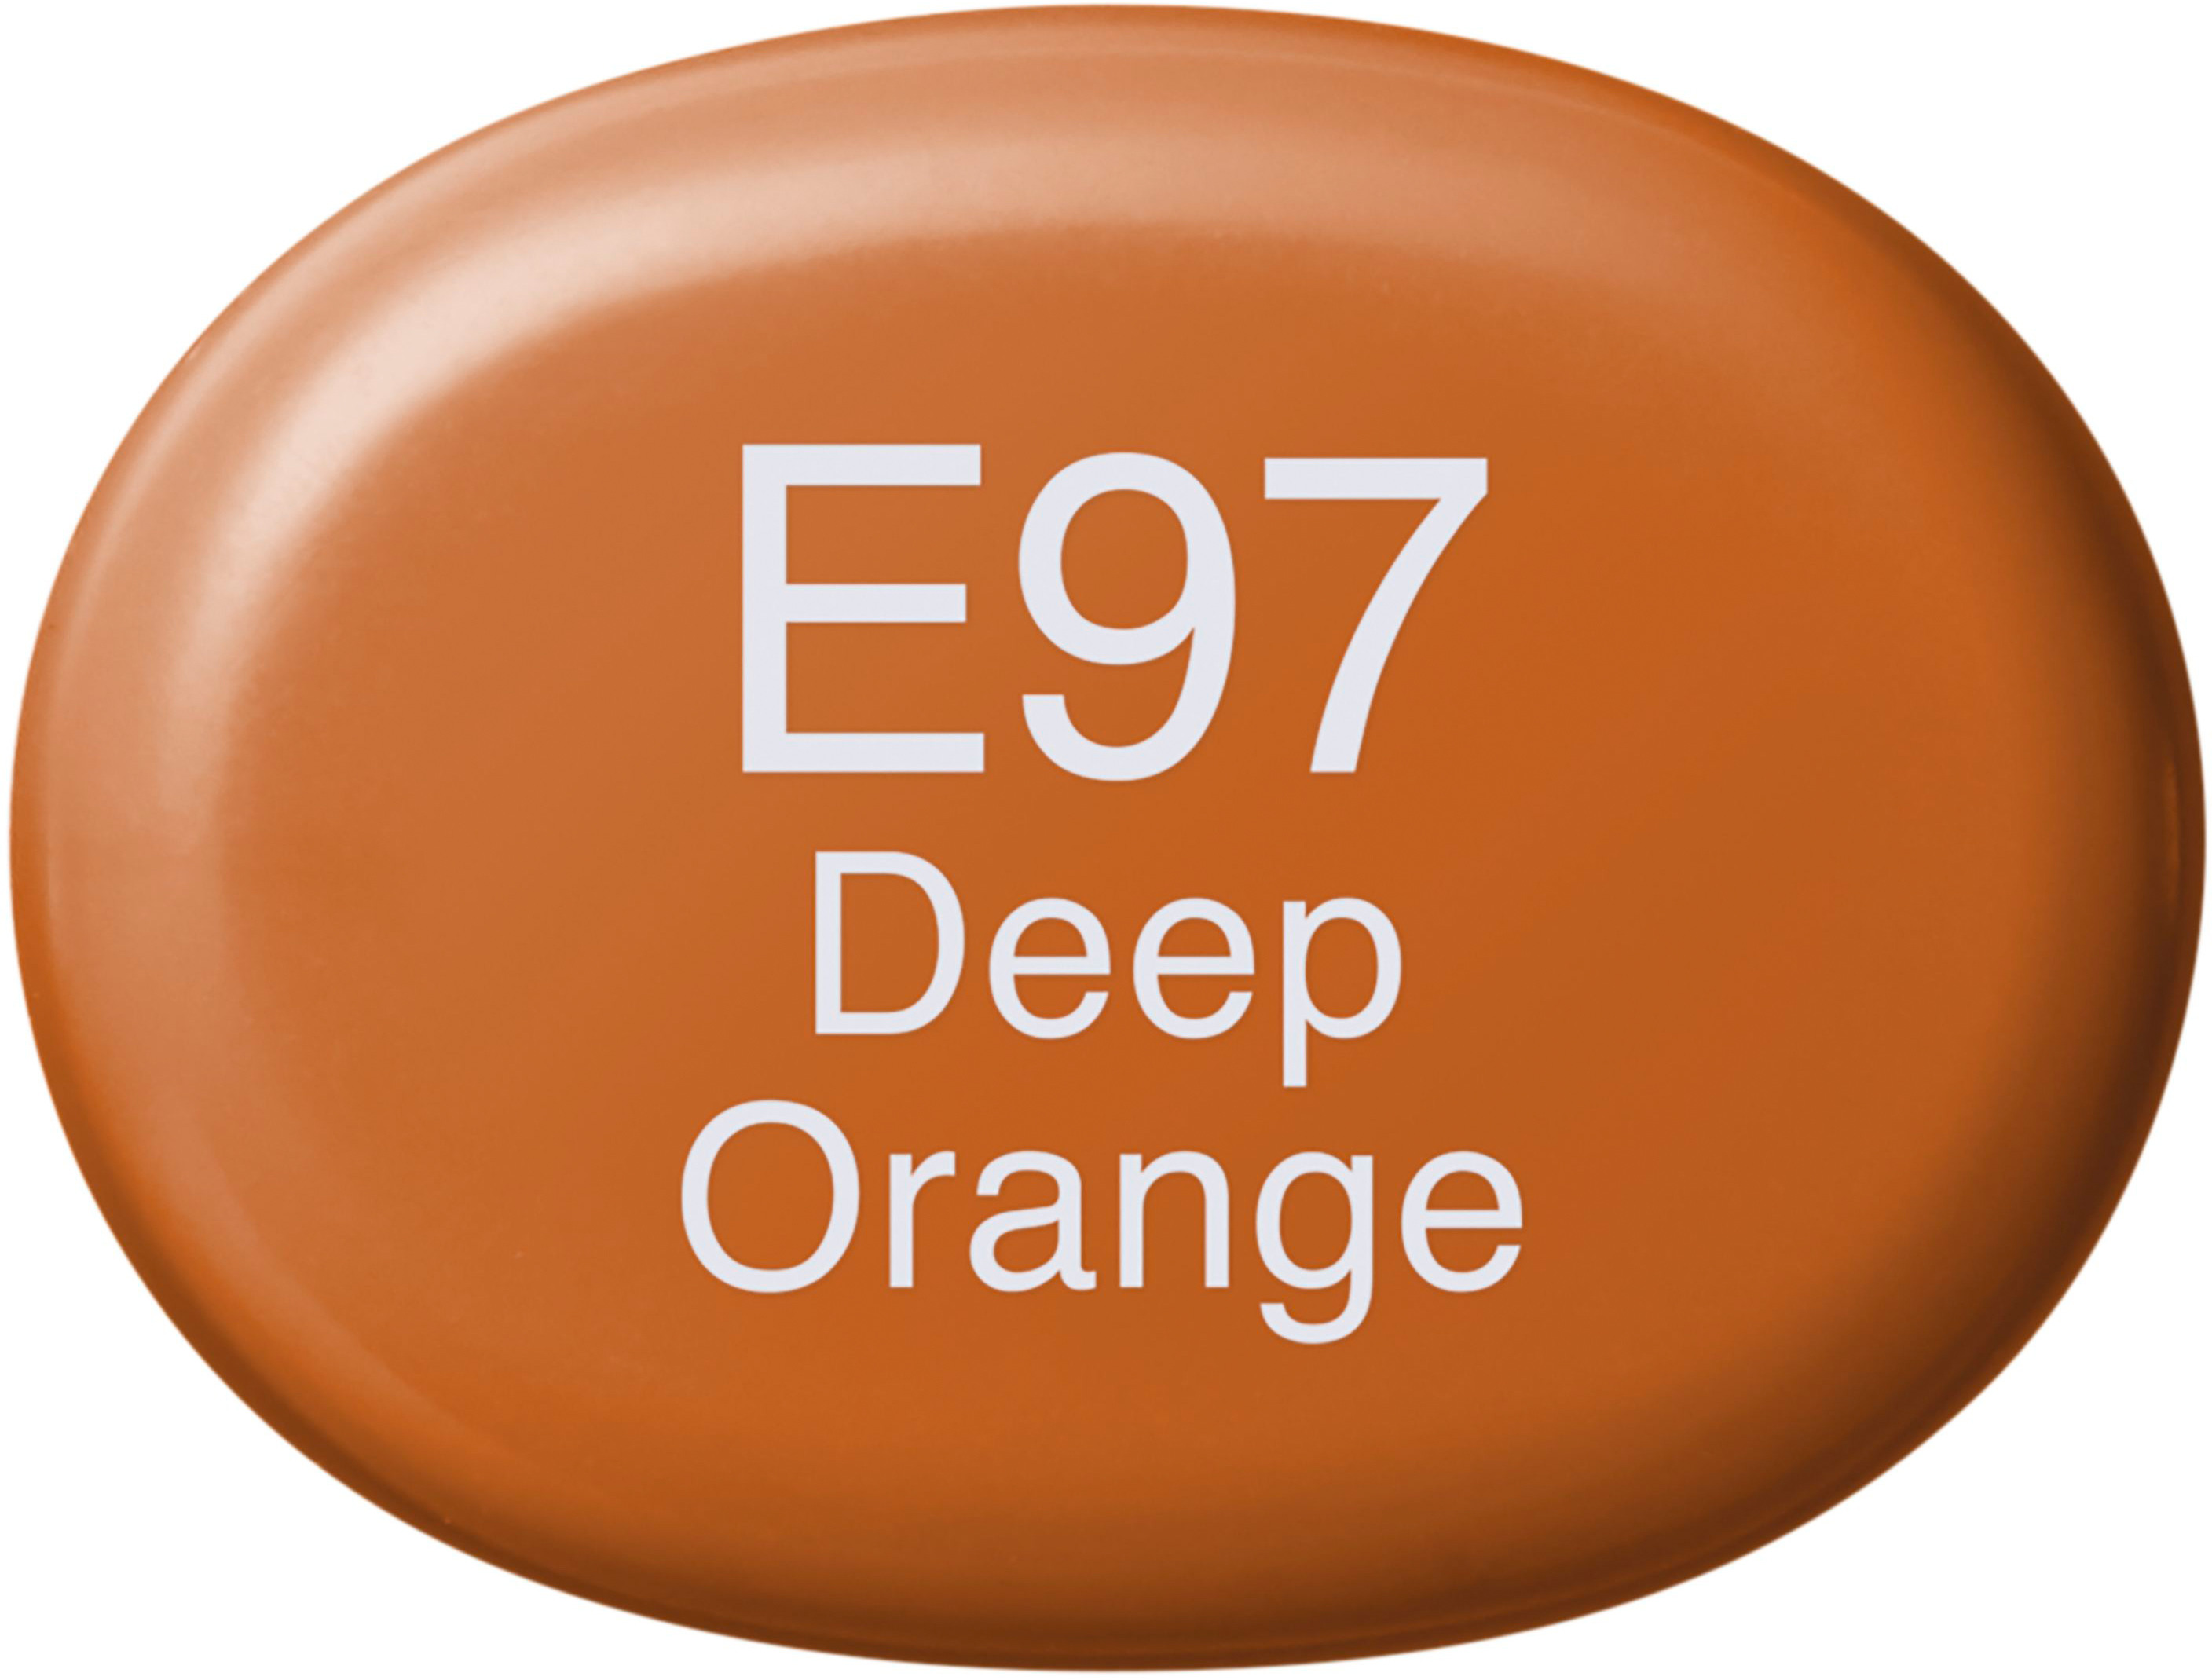 COPIC Marker Sketch 21075333 E97 - Deep Orange